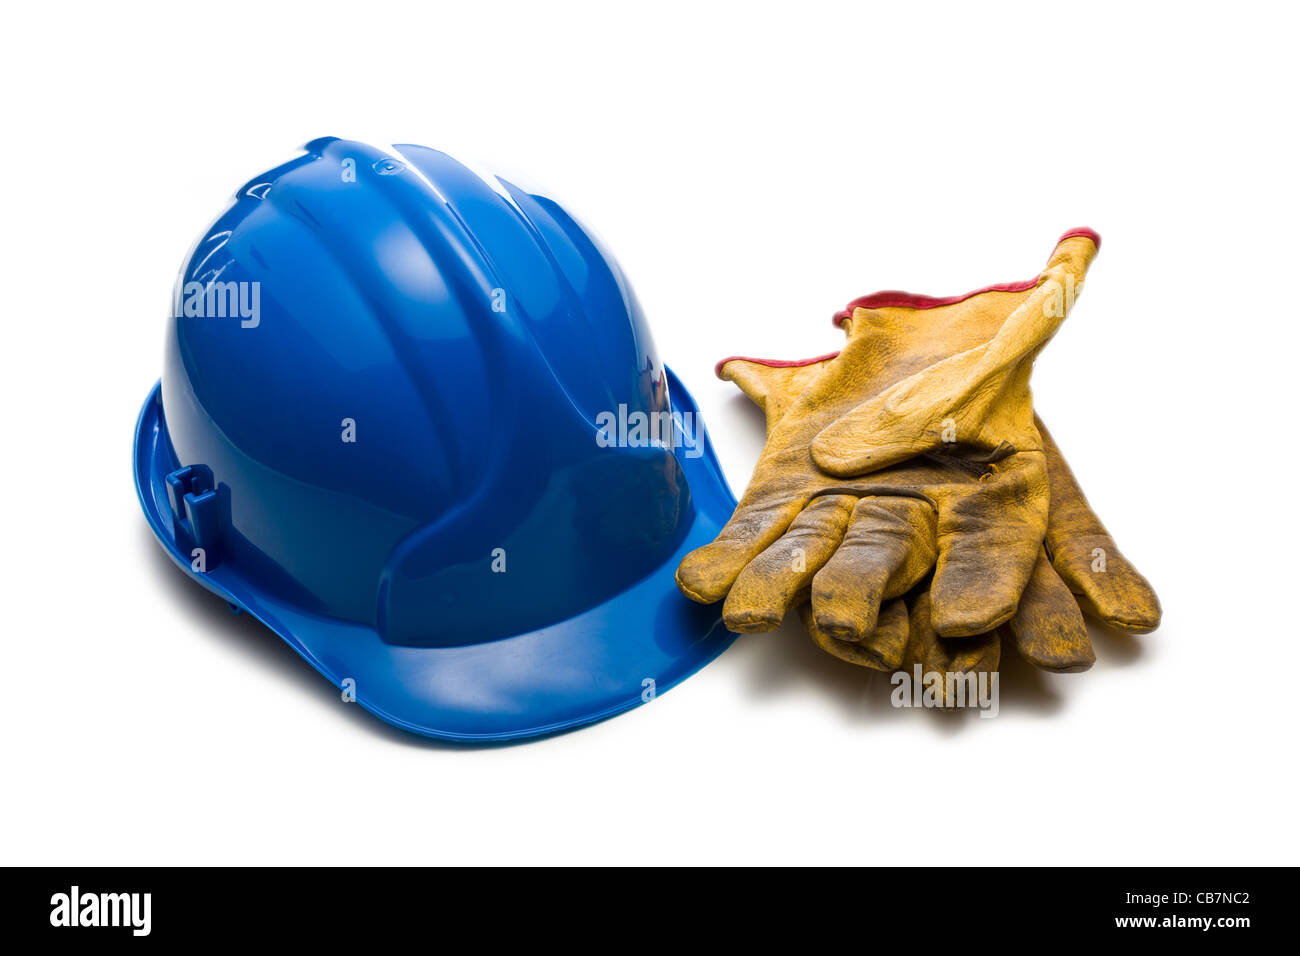 der blaue Helm und Leder Arbeitshandschuhe Stockfoto